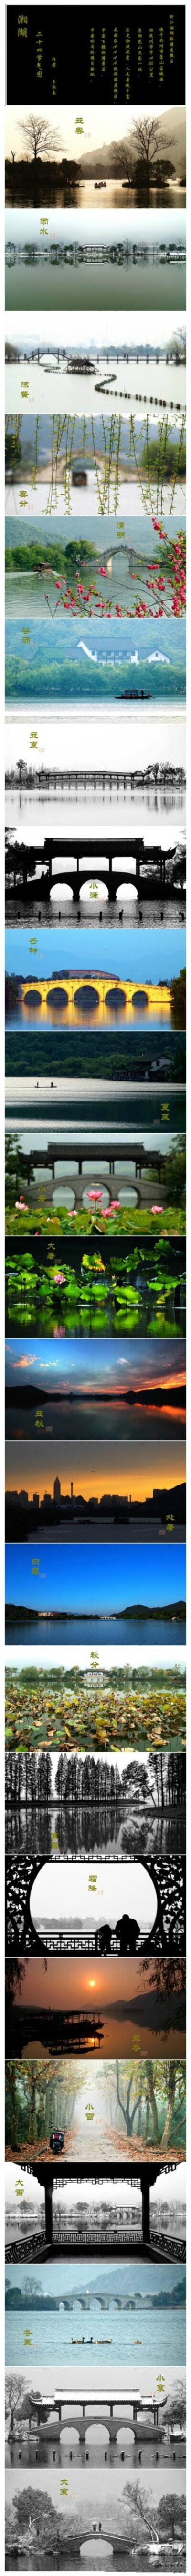 古风·湘湖】湘湖，西湖的姊妹湖，虽没有西湖的名气，但依旧自然，清静。二十四节气，在美丽的湘湖留下时光的烙印。